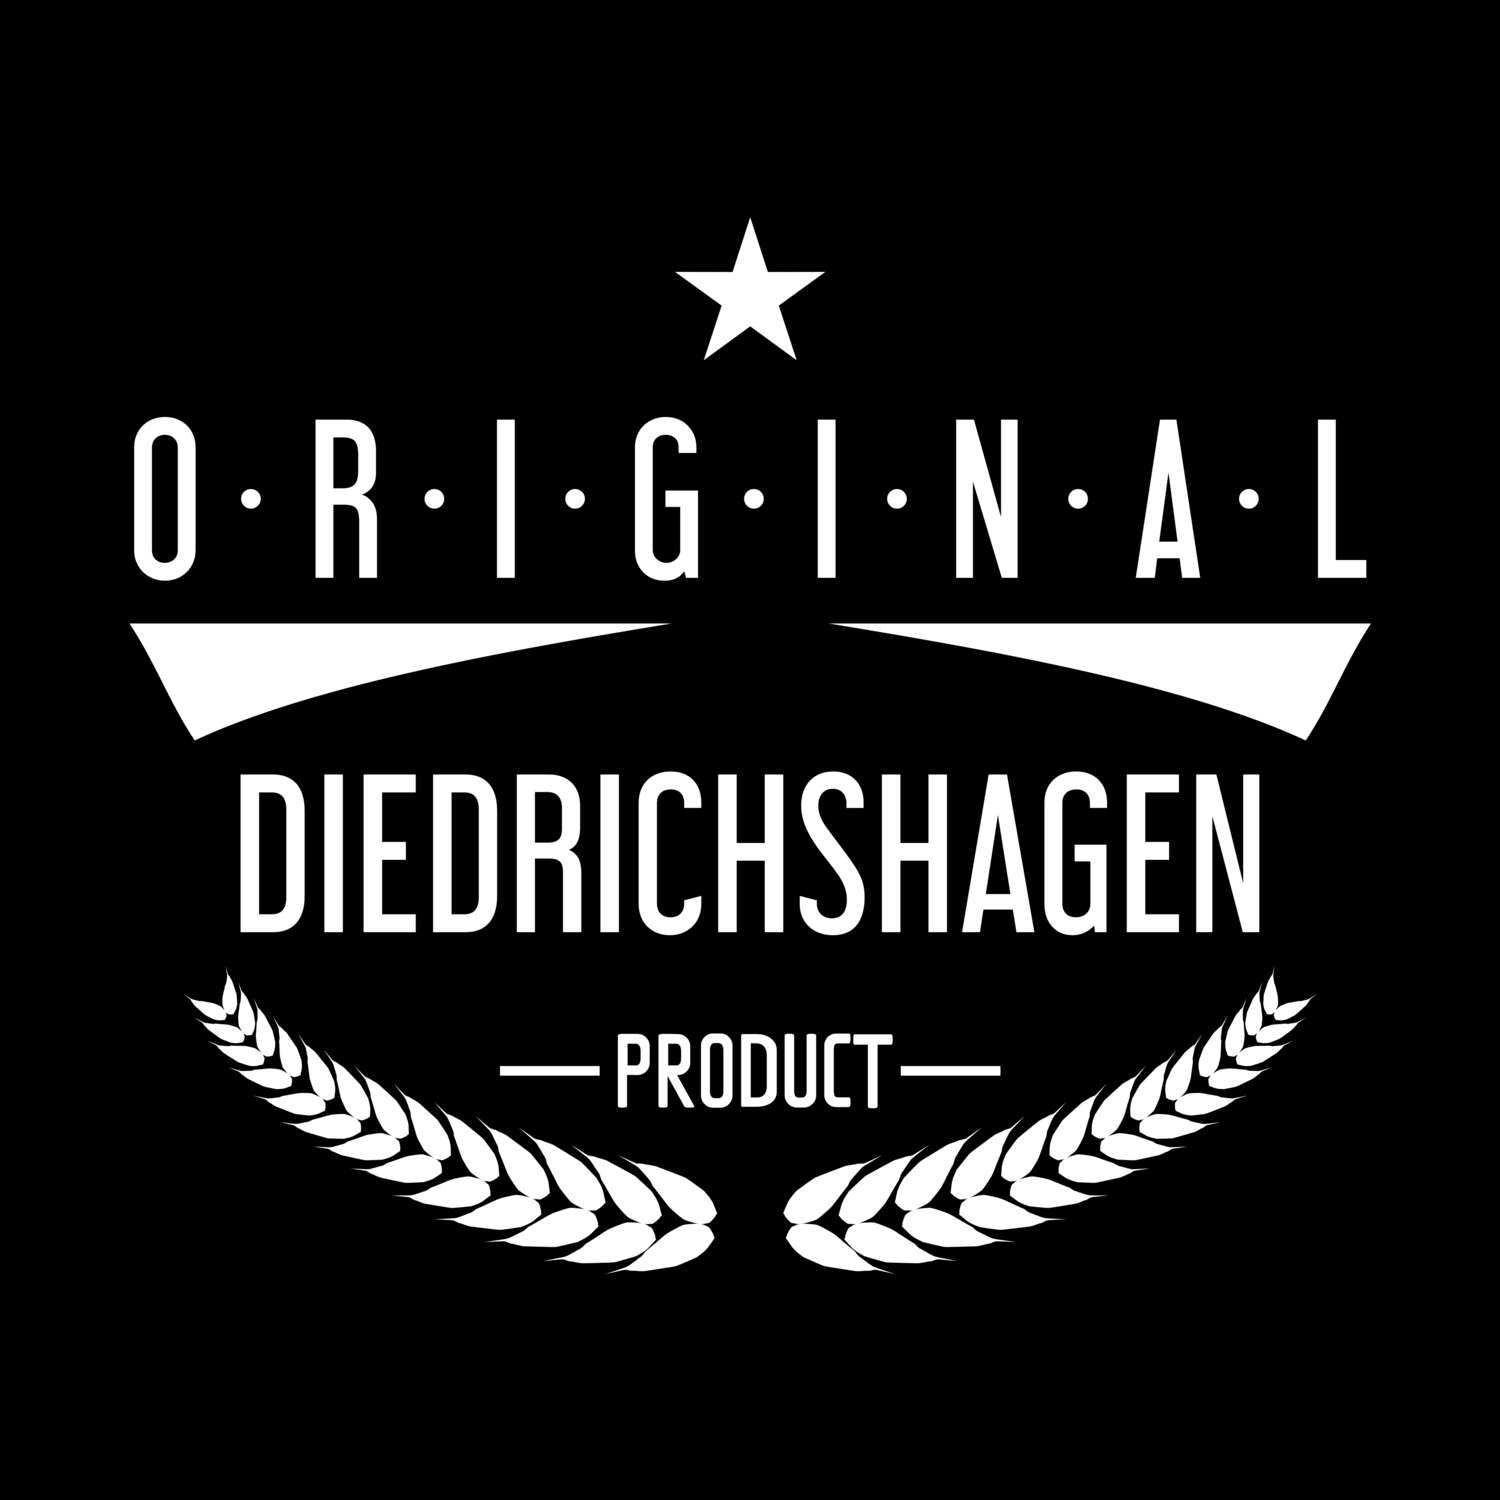 Diedrichshagen T-Shirt »Original Product«